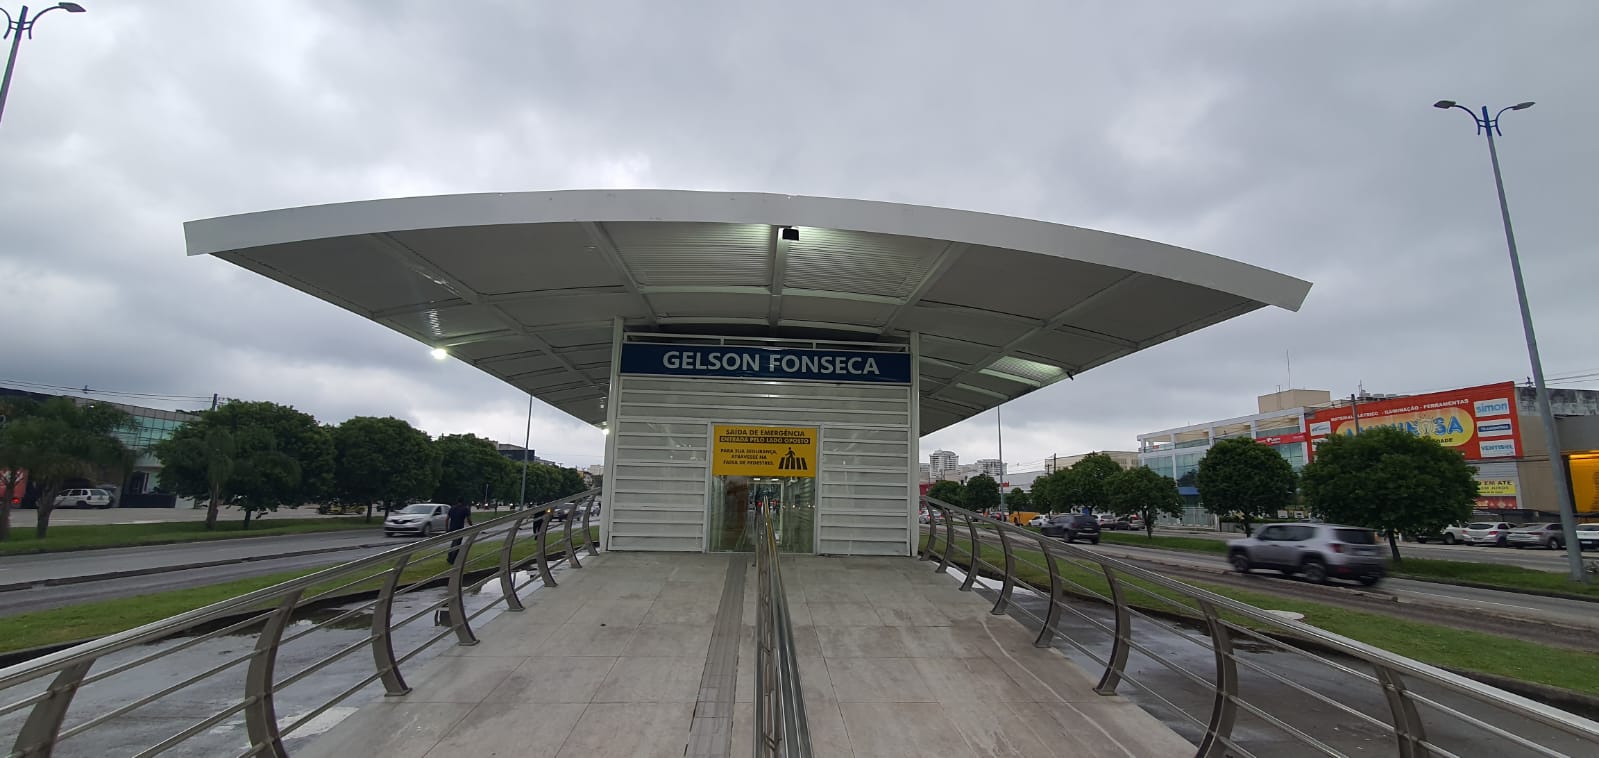 Imagem da Estação Gelson Fonseca do BRT